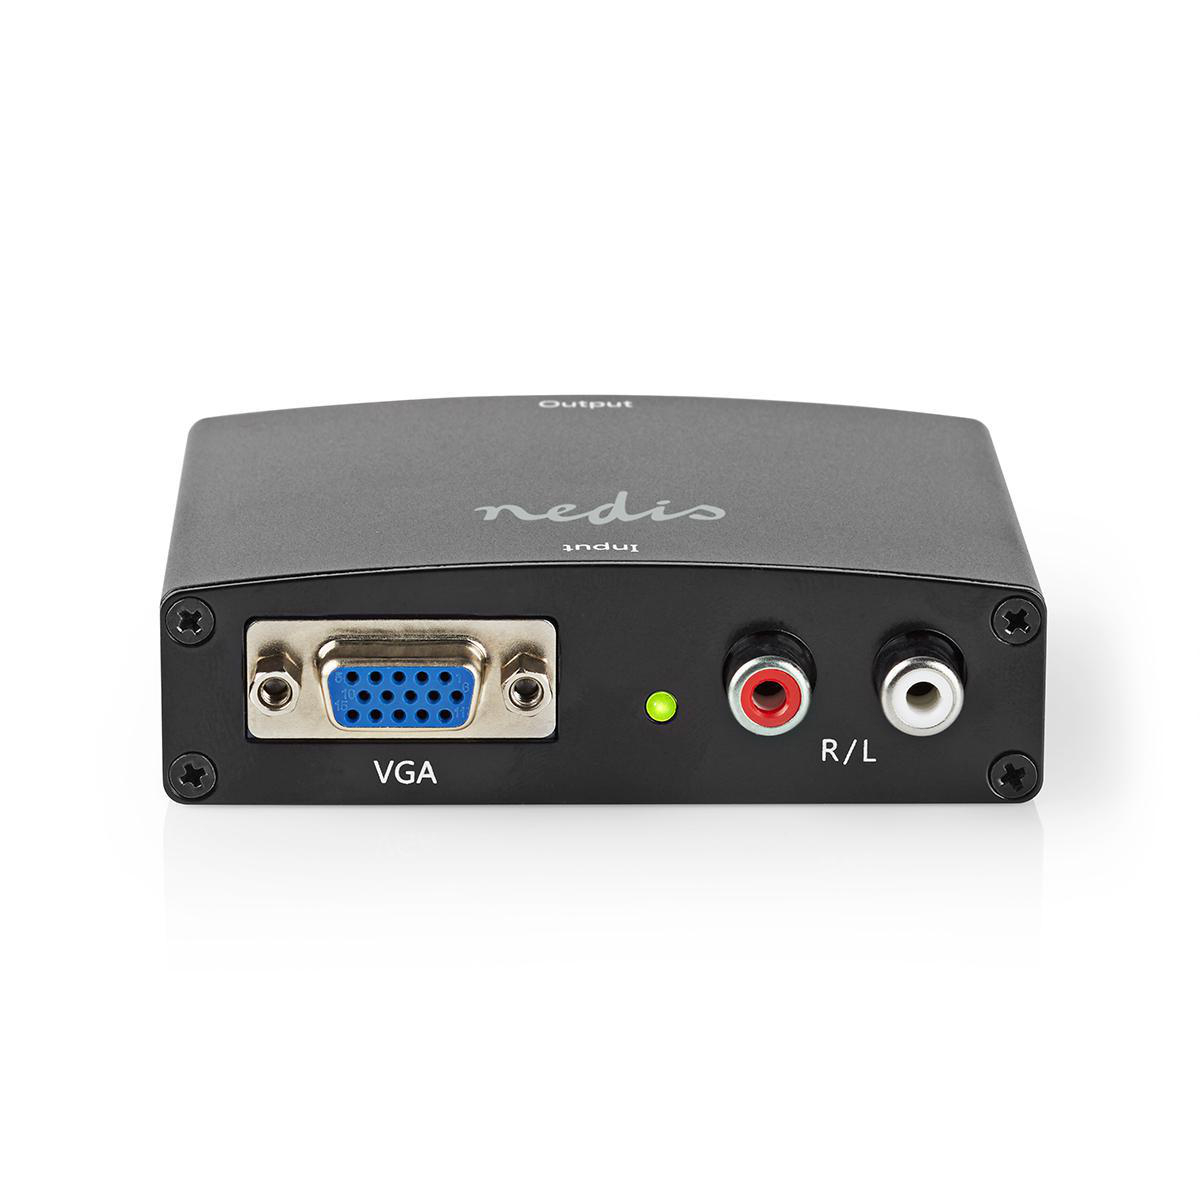 HDMI VCON3454AT NEDIS Converter